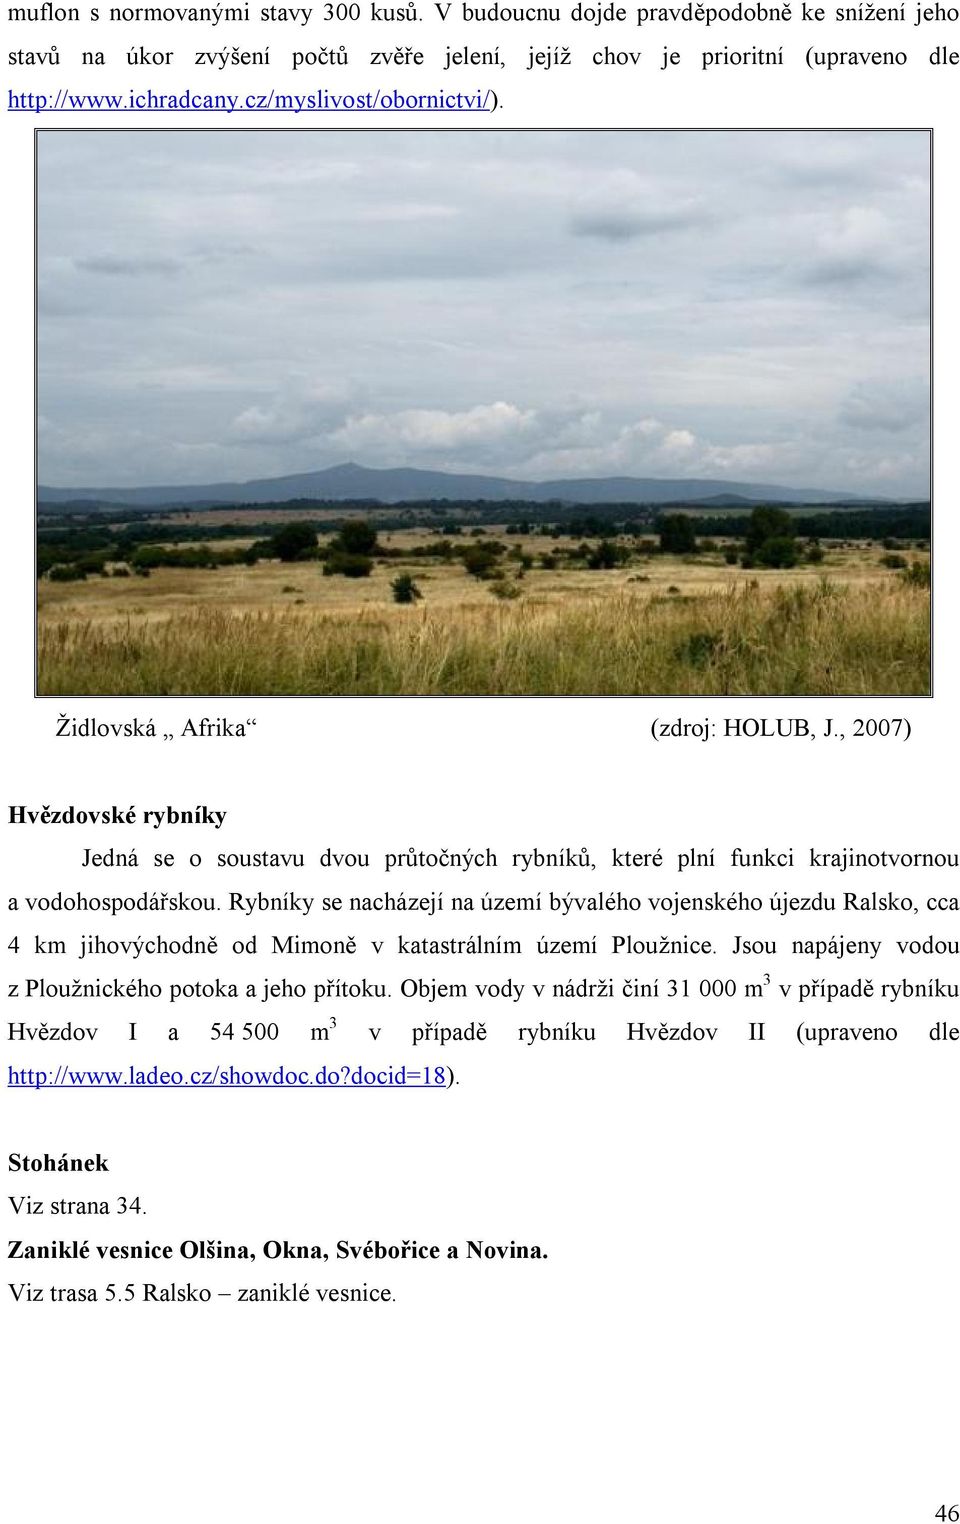 Rybníky se nacházejí na území bývalého vojenského újezdu Ralsko, cca 4 km jihovýchodně od Mimoně v katastrálním území Ploužnice. Jsou napájeny vodou z Ploužnického potoka a jeho přítoku.